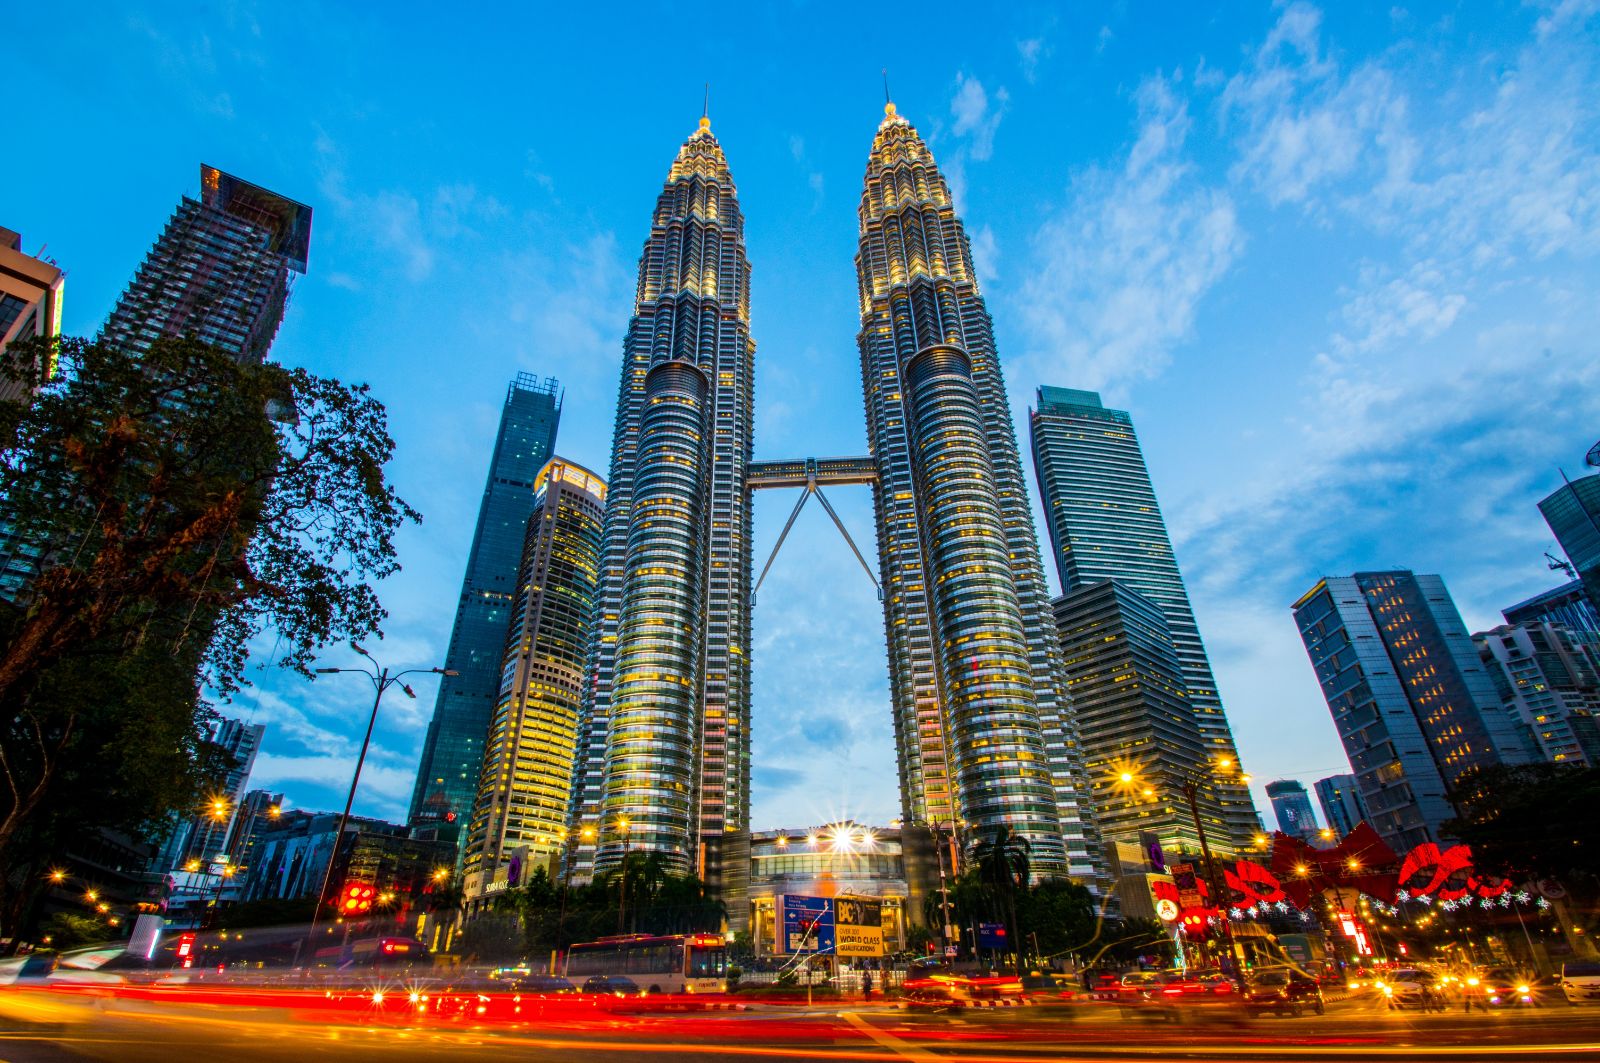 The Petronus Towers in Kuala Lumpur, Malaysia